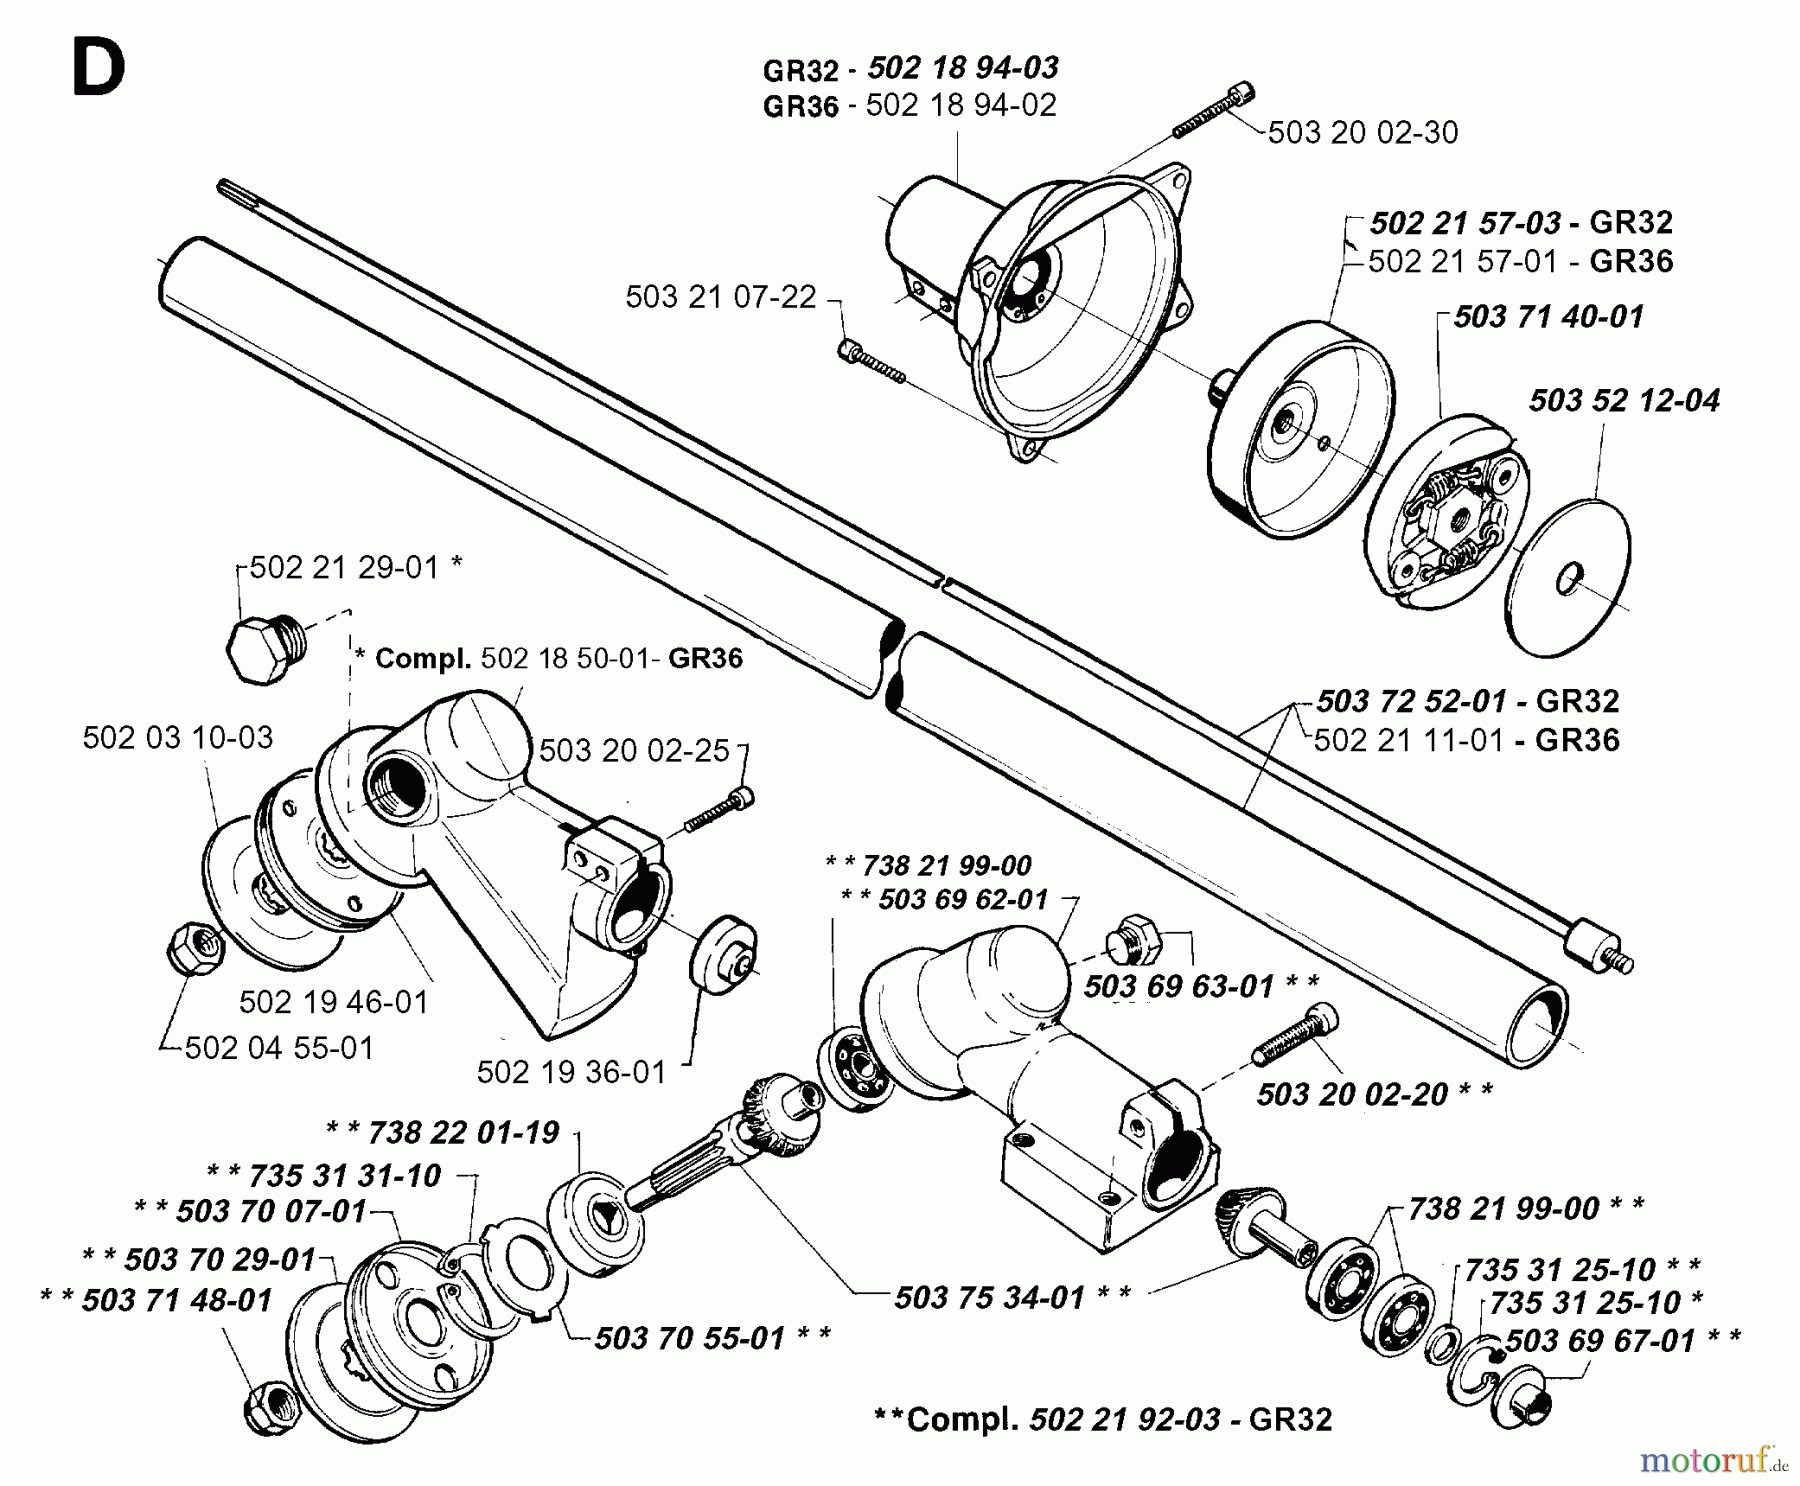  Jonsered Motorsensen, Trimmer GR32 - Jonsered String/Brush Trimmer (1994-02) BEVEL GEAR SHAFT